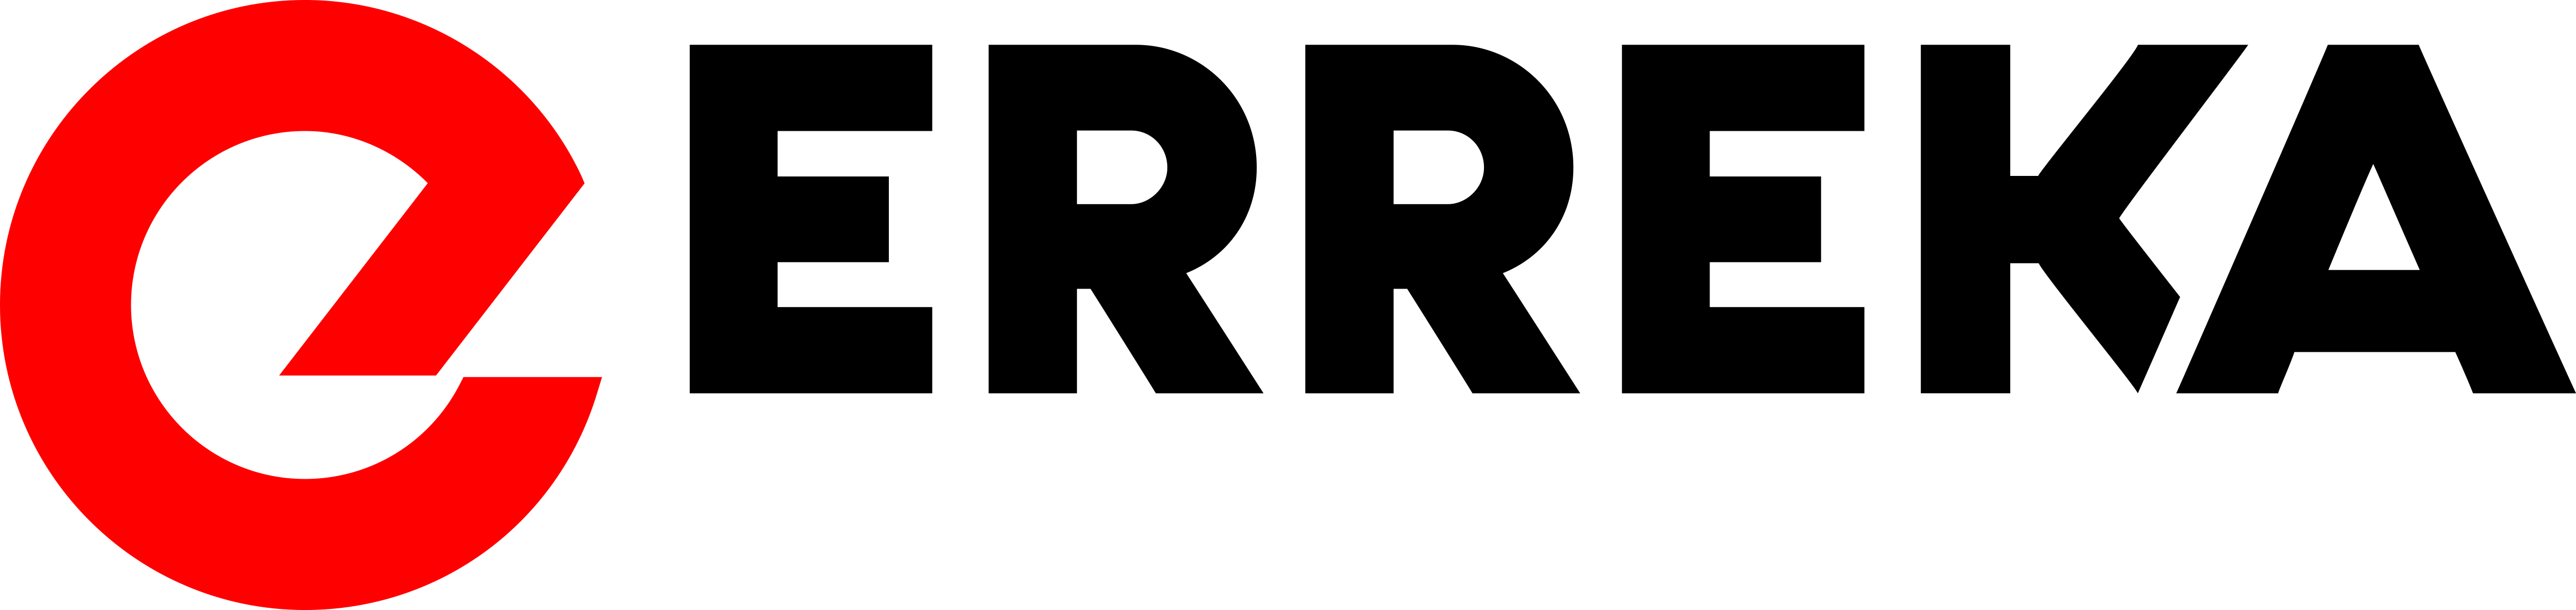 Erreka logo